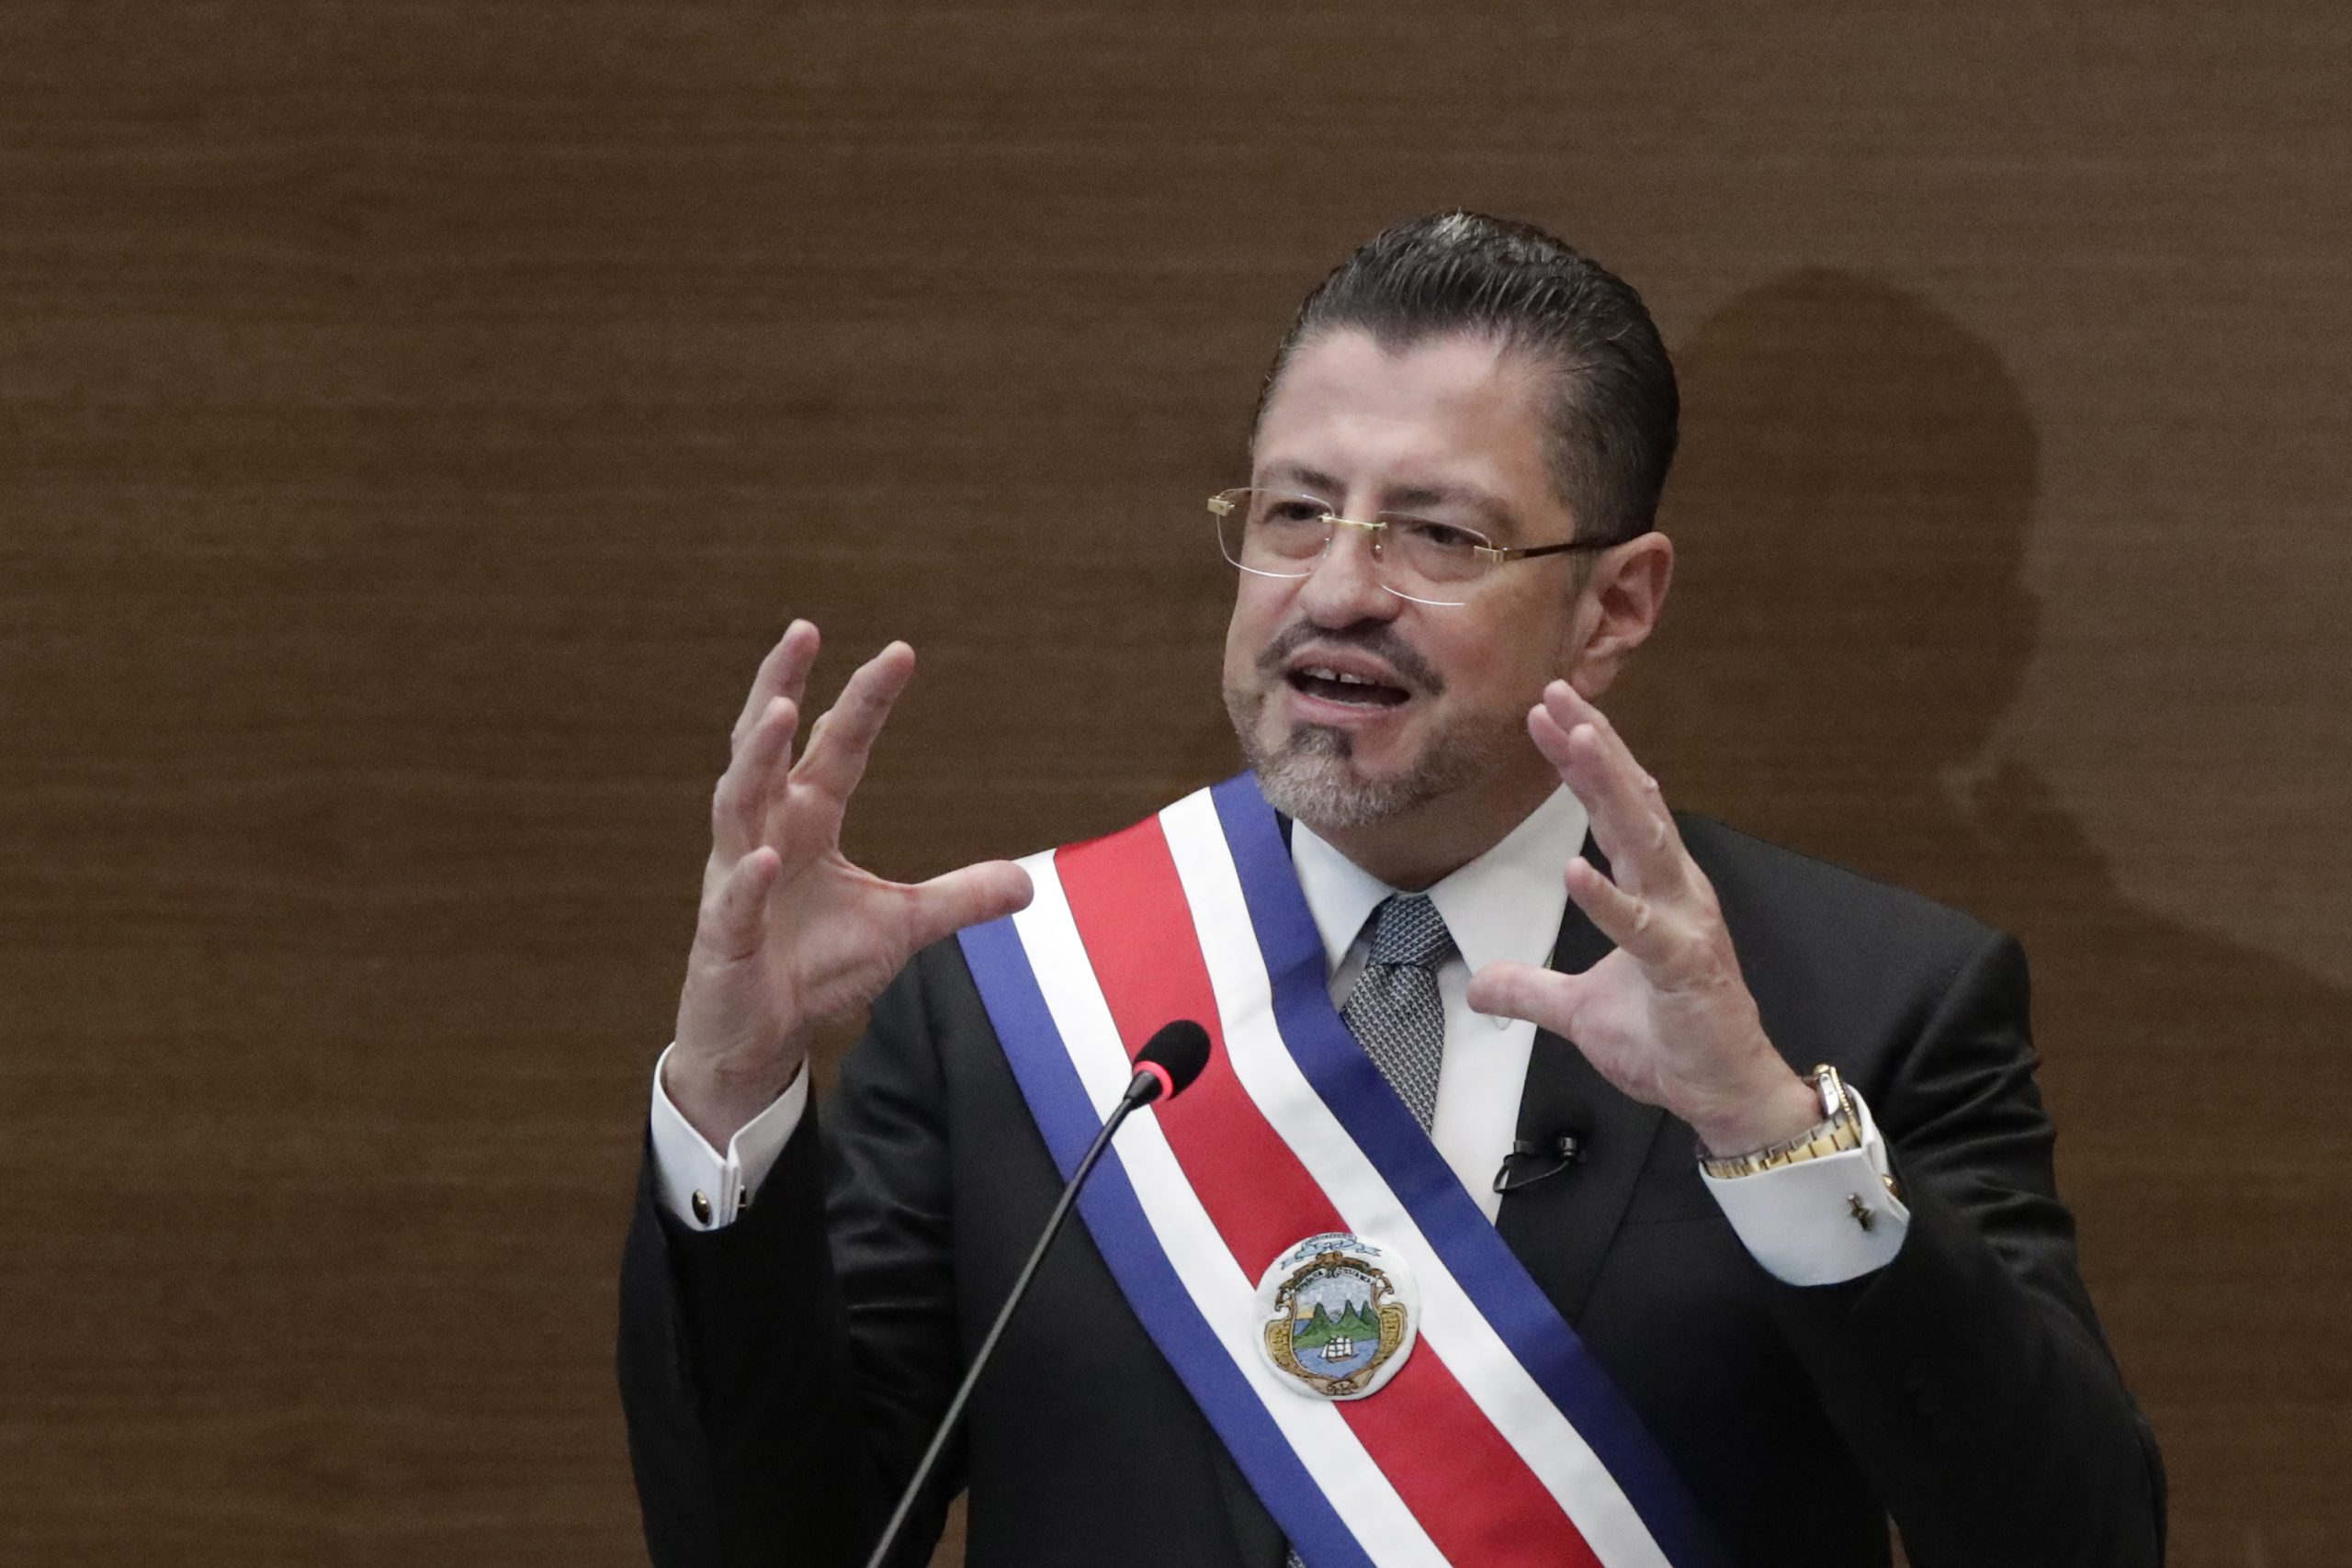 哥斯达黎加新总统宣誓就职 首要任务救经济